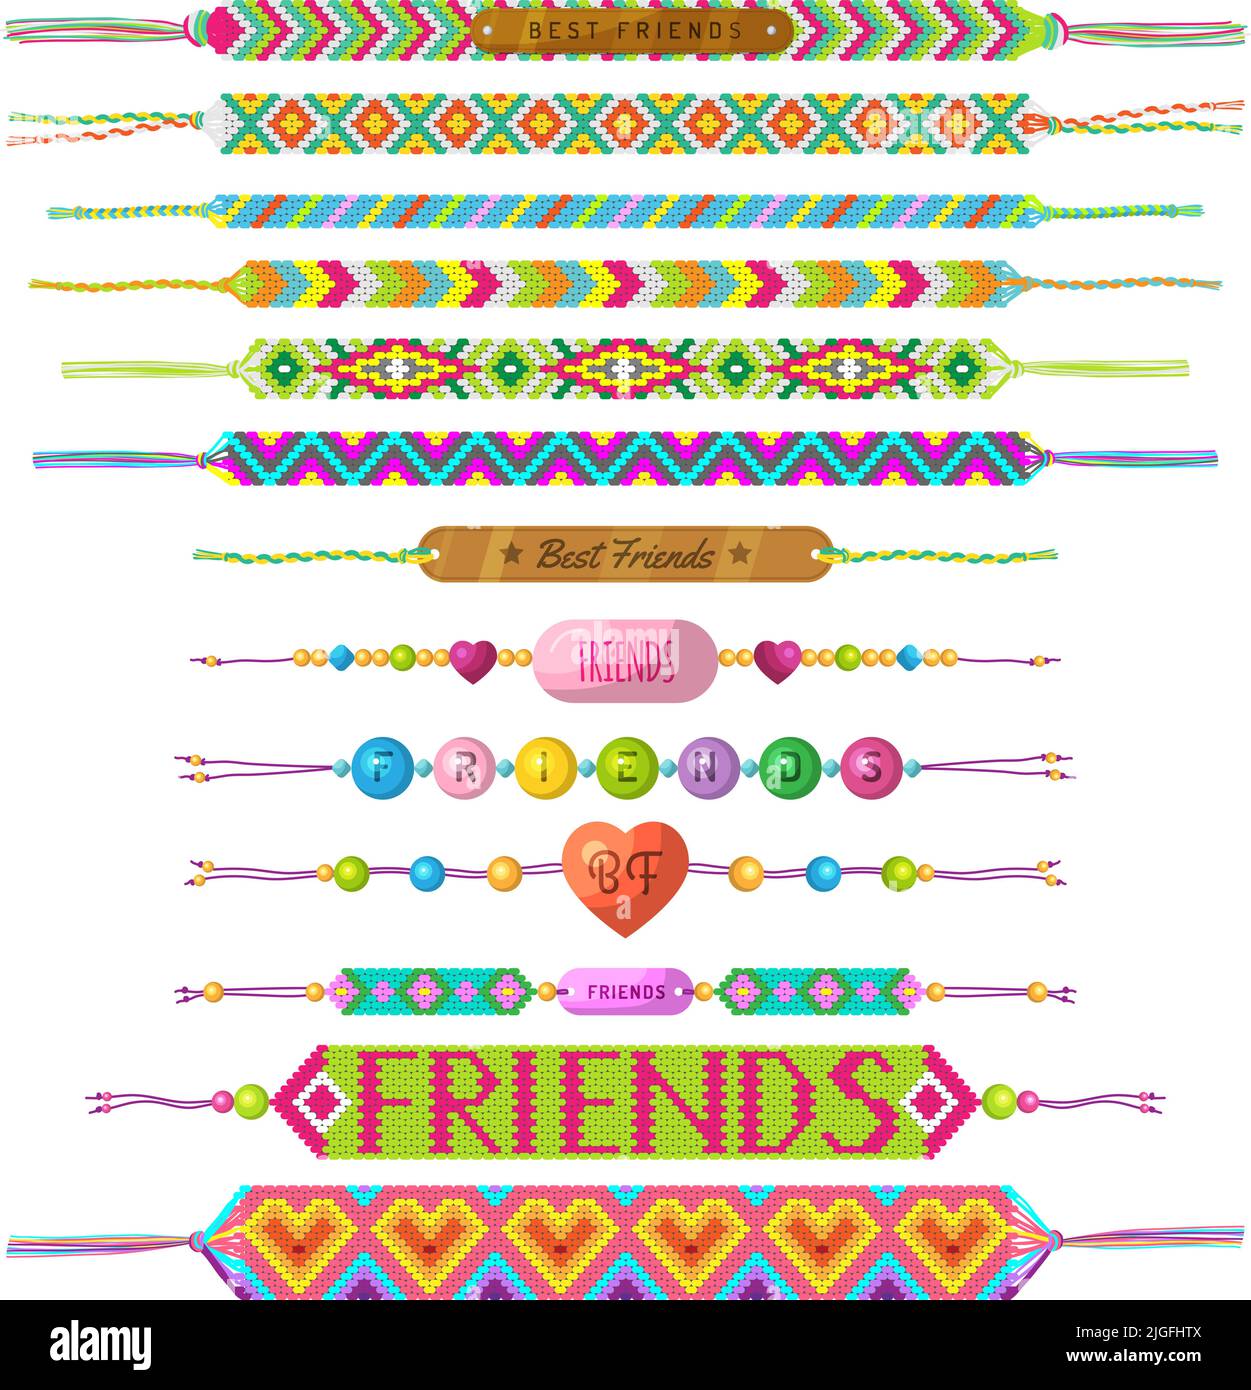 friendship bracelet clipart